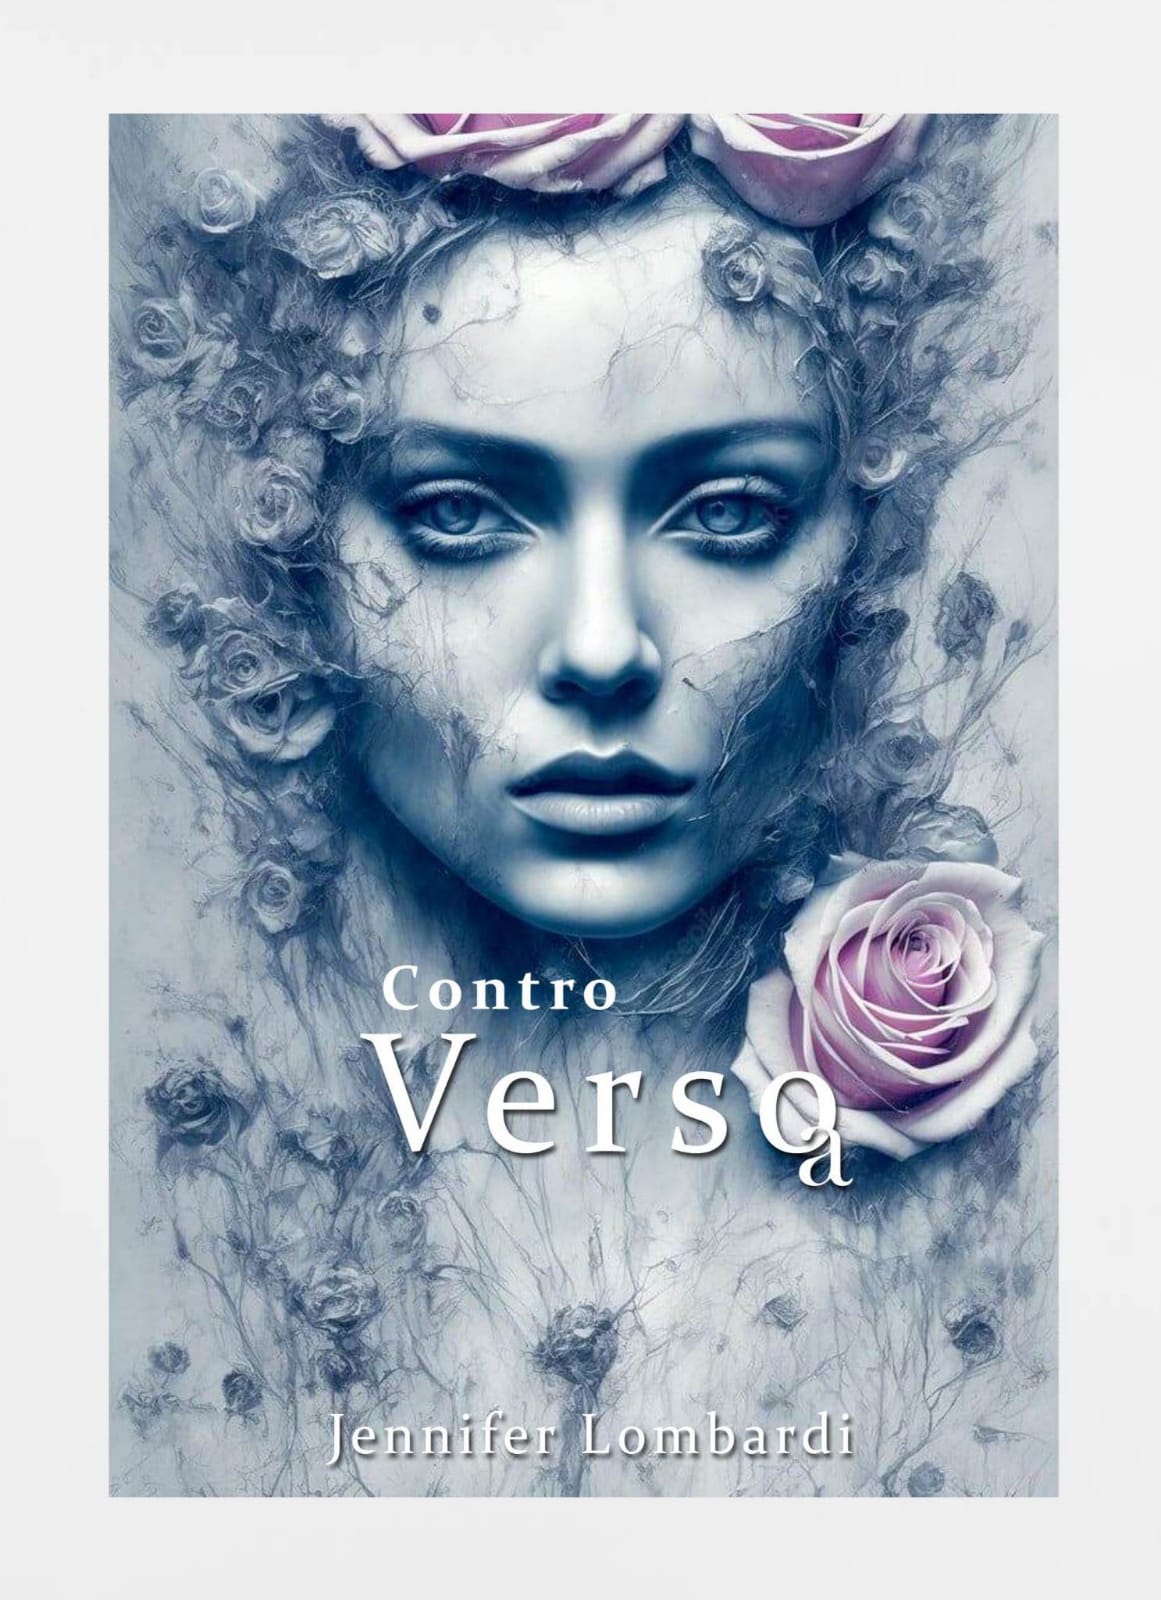 Contro Verso-a, le poesie di Jennifer Lombardi: "Una poesia al femminile e controcorrente"